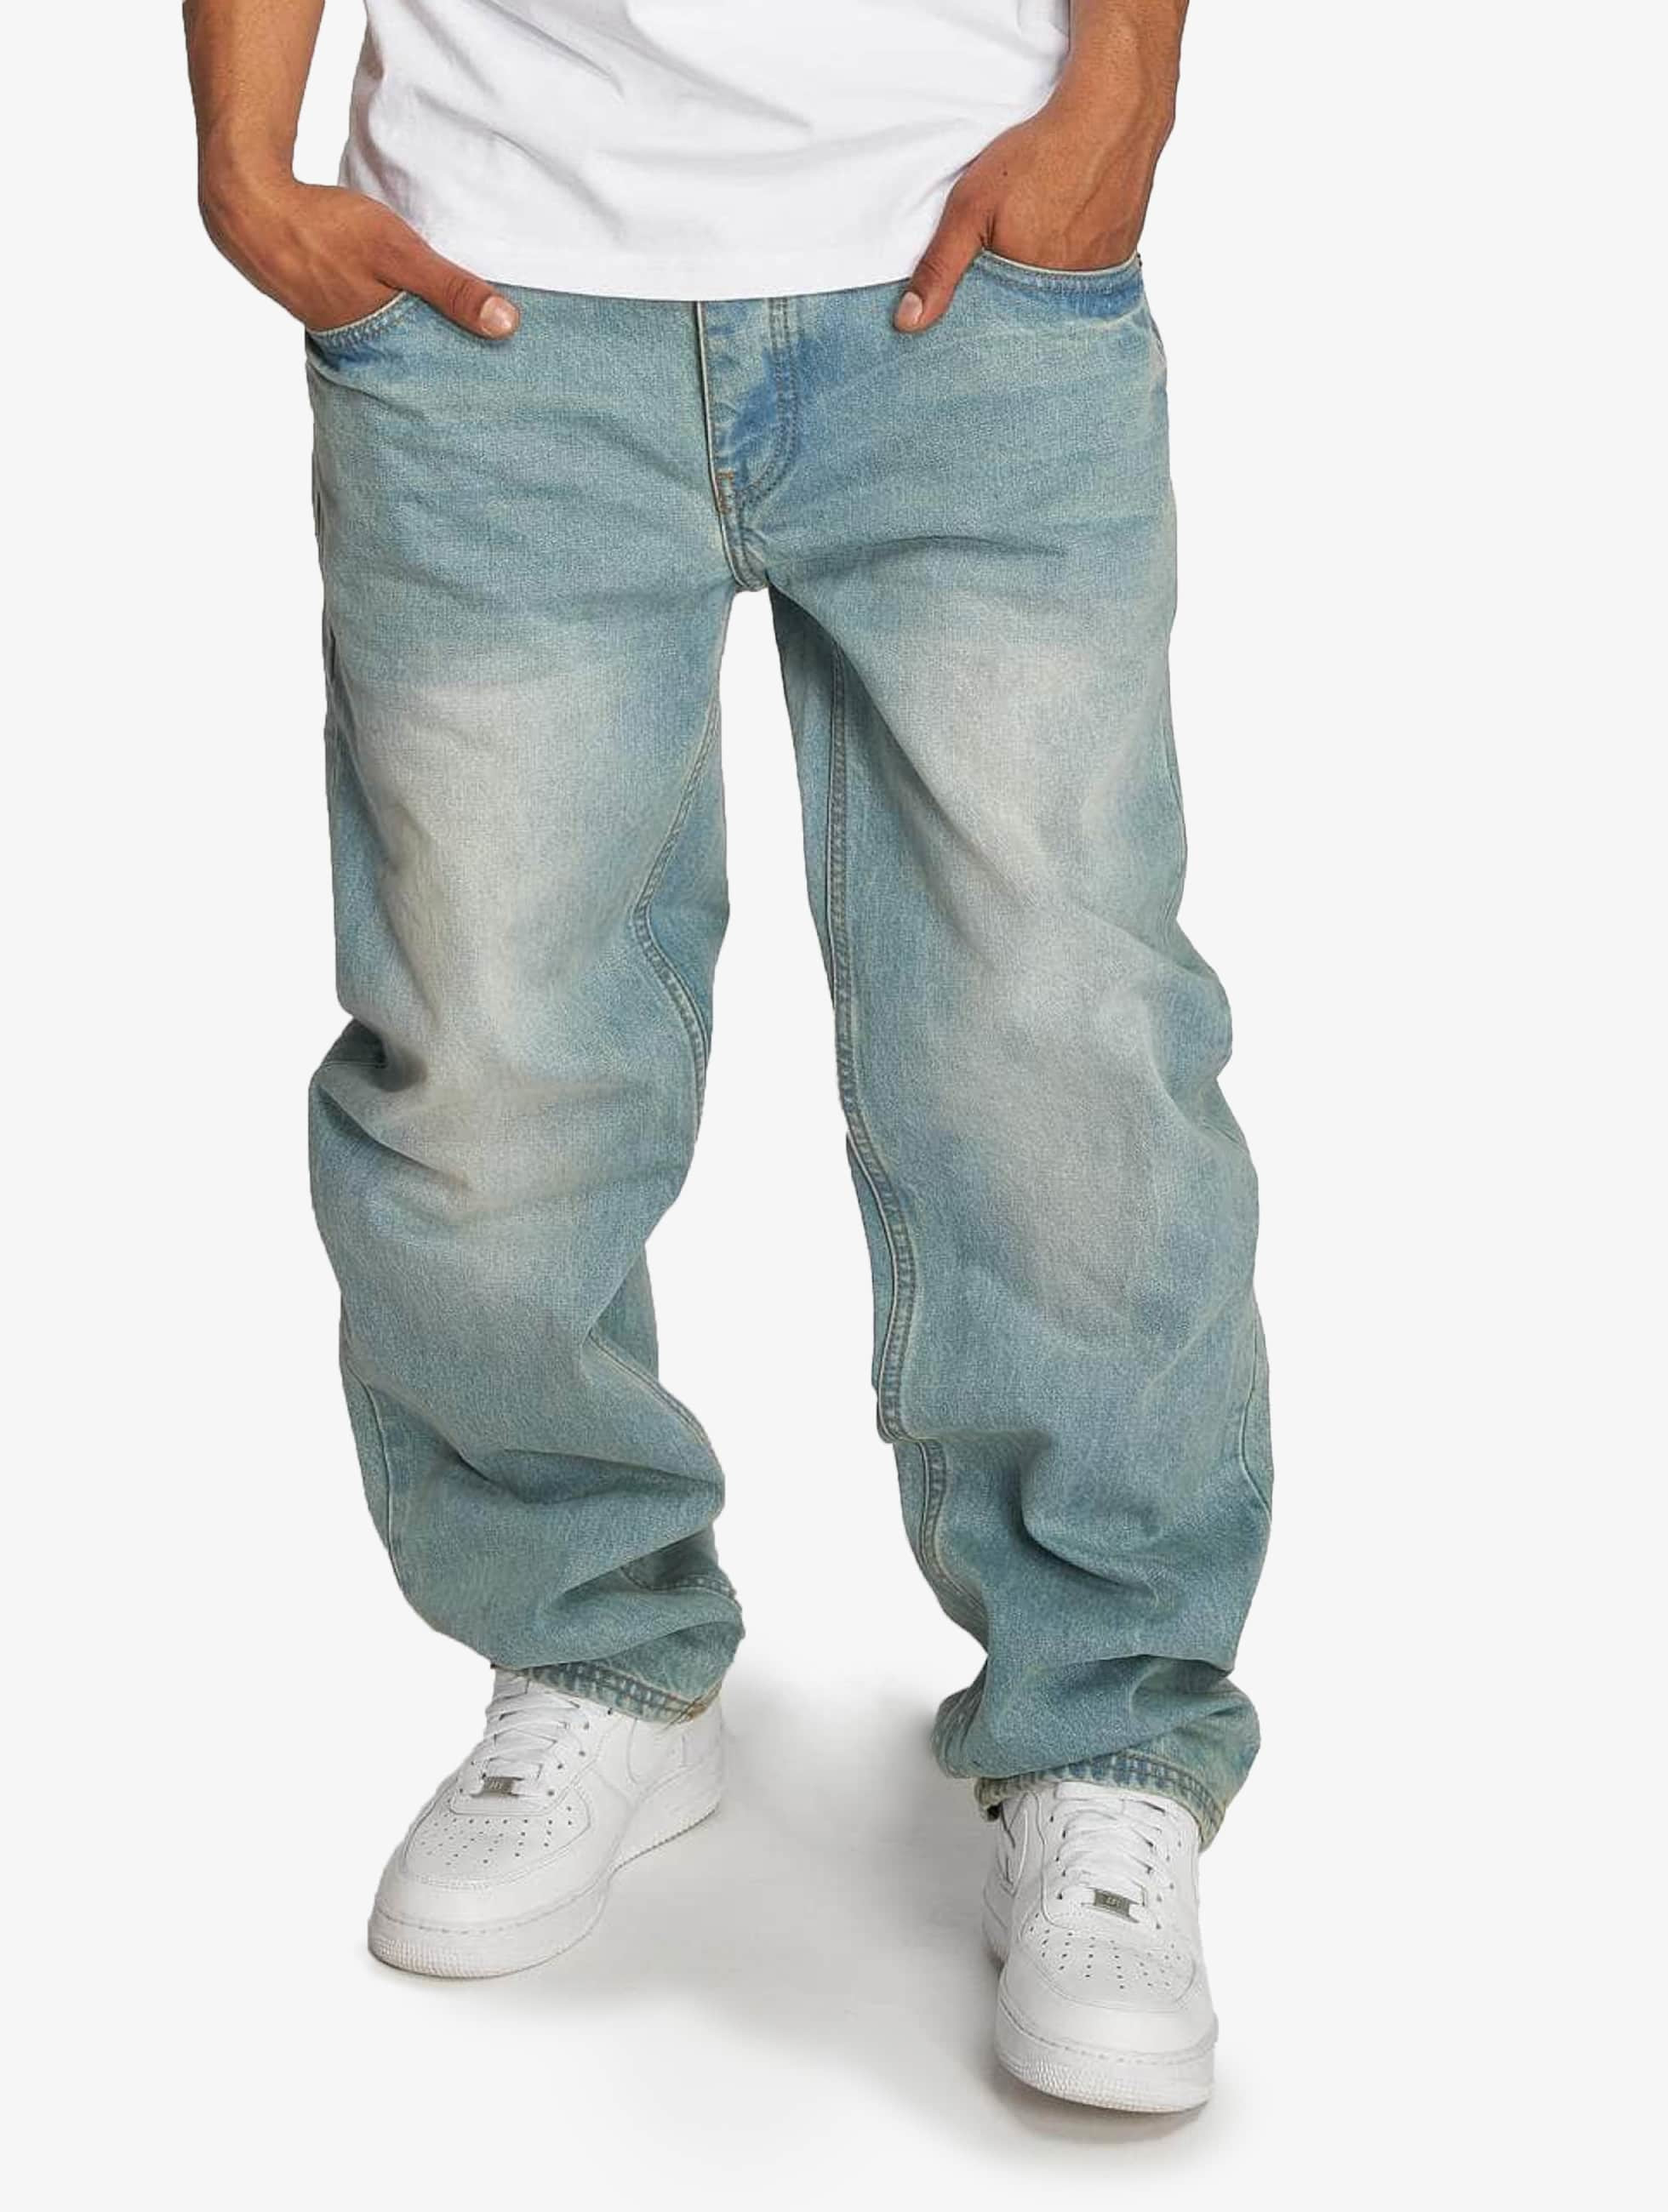 President gemak Refrein Ecko Unltd. Jeans / Loose fit jeans Hang in blauw 303550